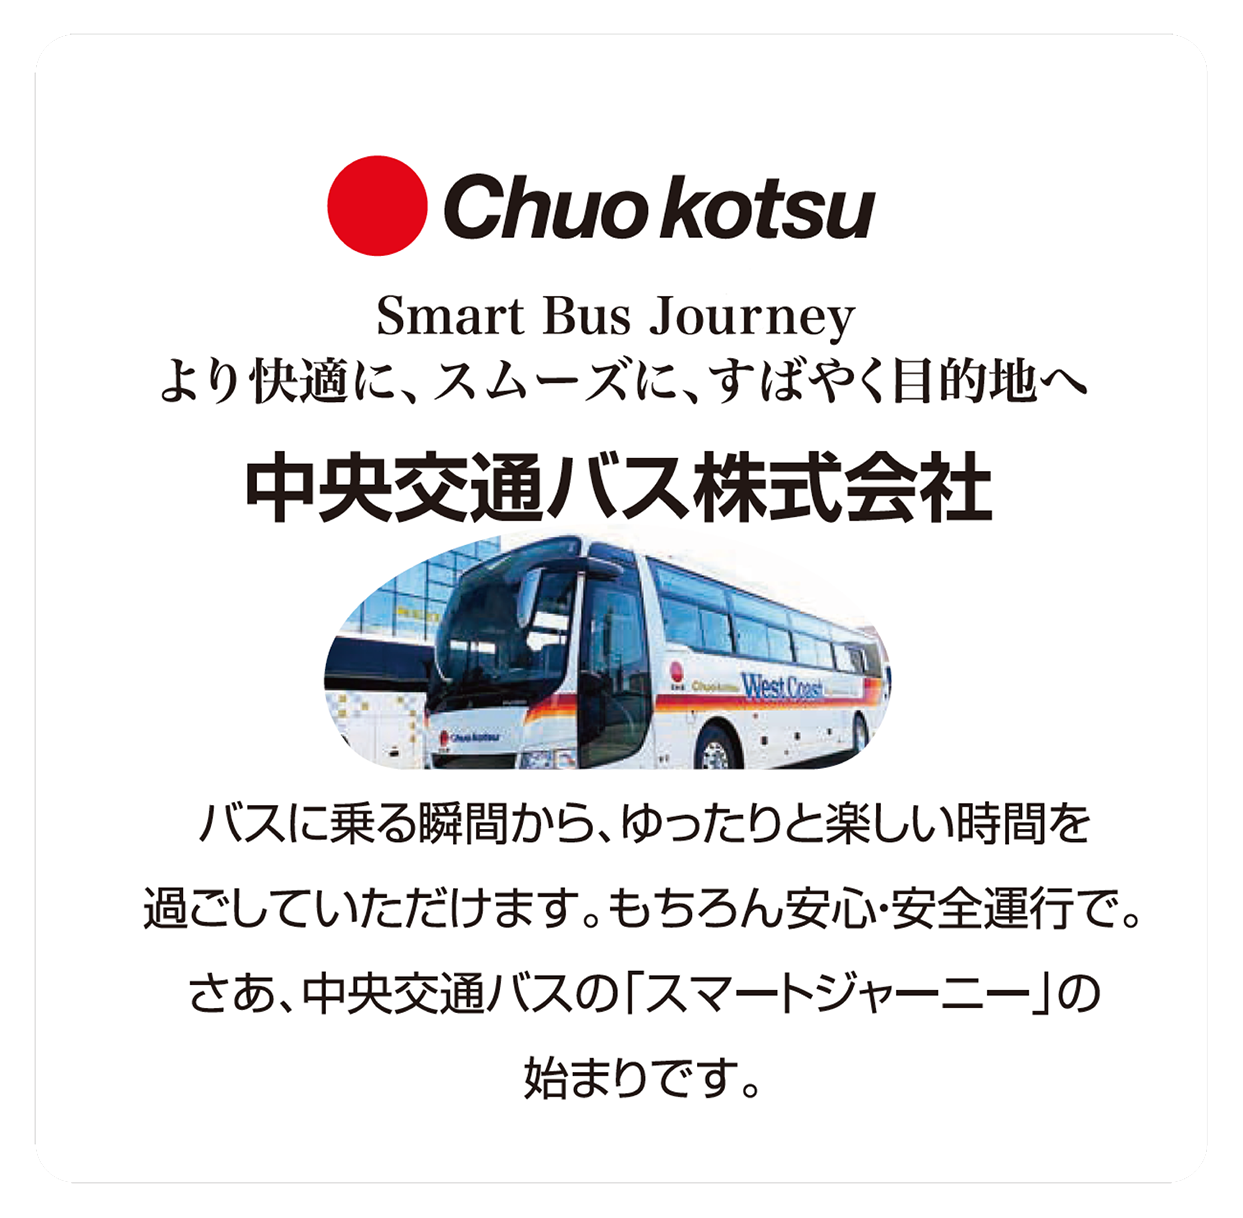 中央交通バス株式会社（大阪）